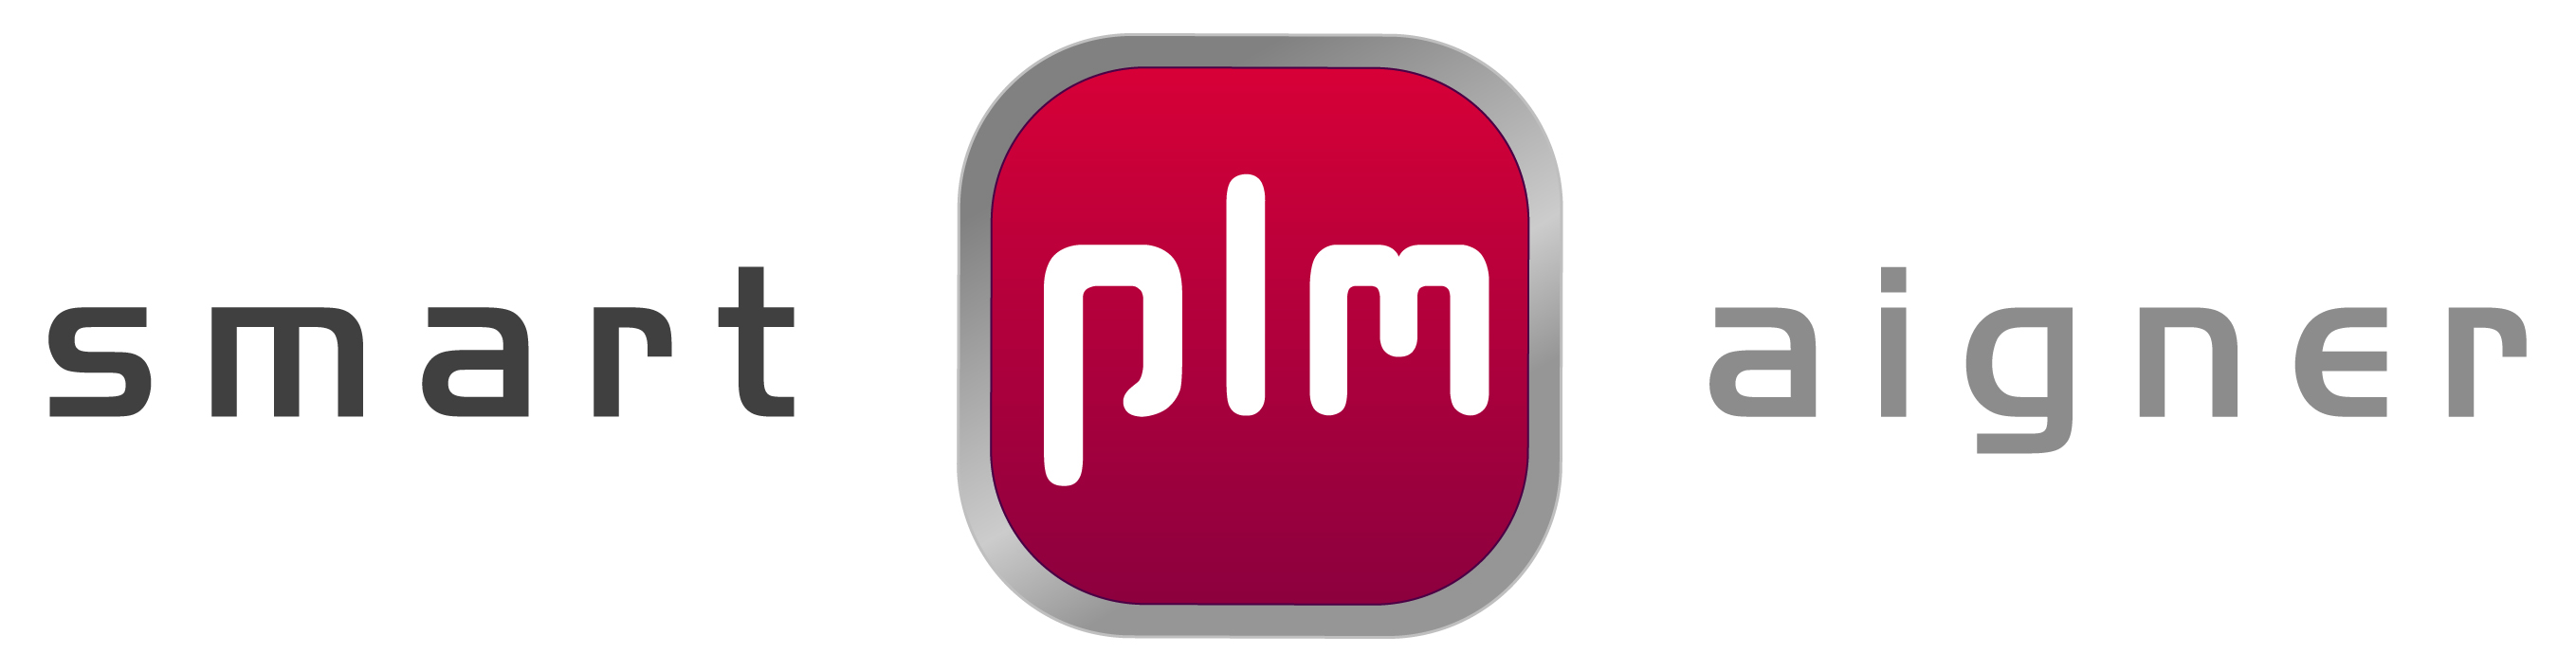 smart-plm Aigner GmbH & Co. KG